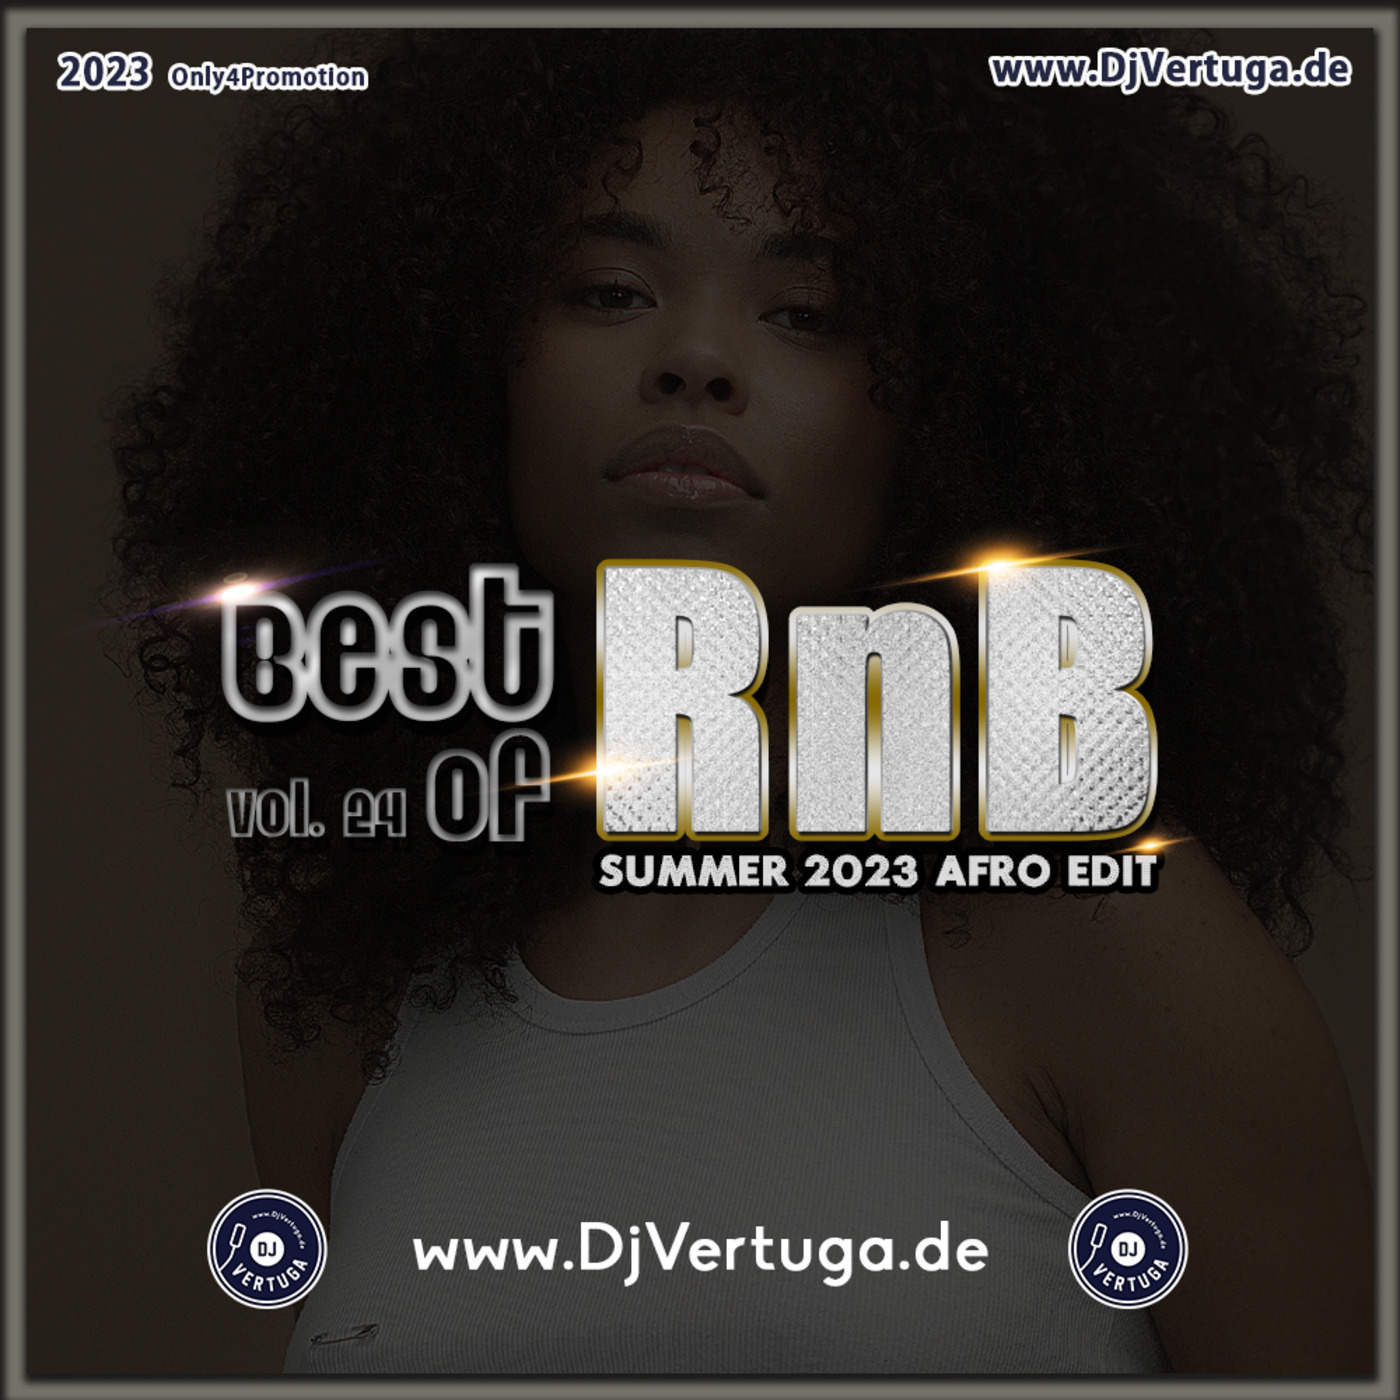 Dj Vertuga - Best of RnB vol. 24 (SUMMER 2023 Afro Edit)